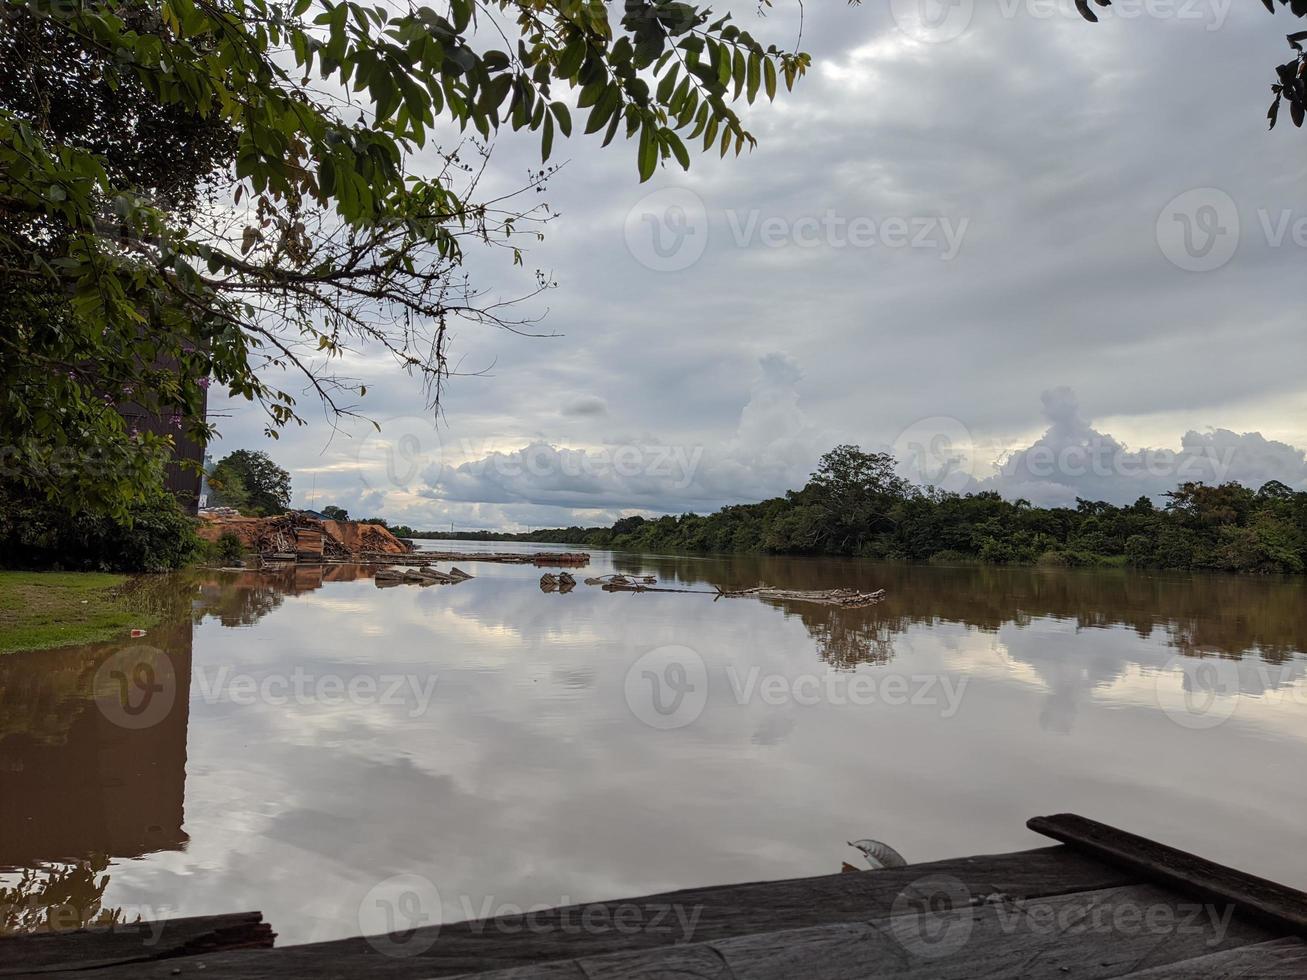 njut av utsikten på stranden av floden, Kalimantan, Indonesien foto